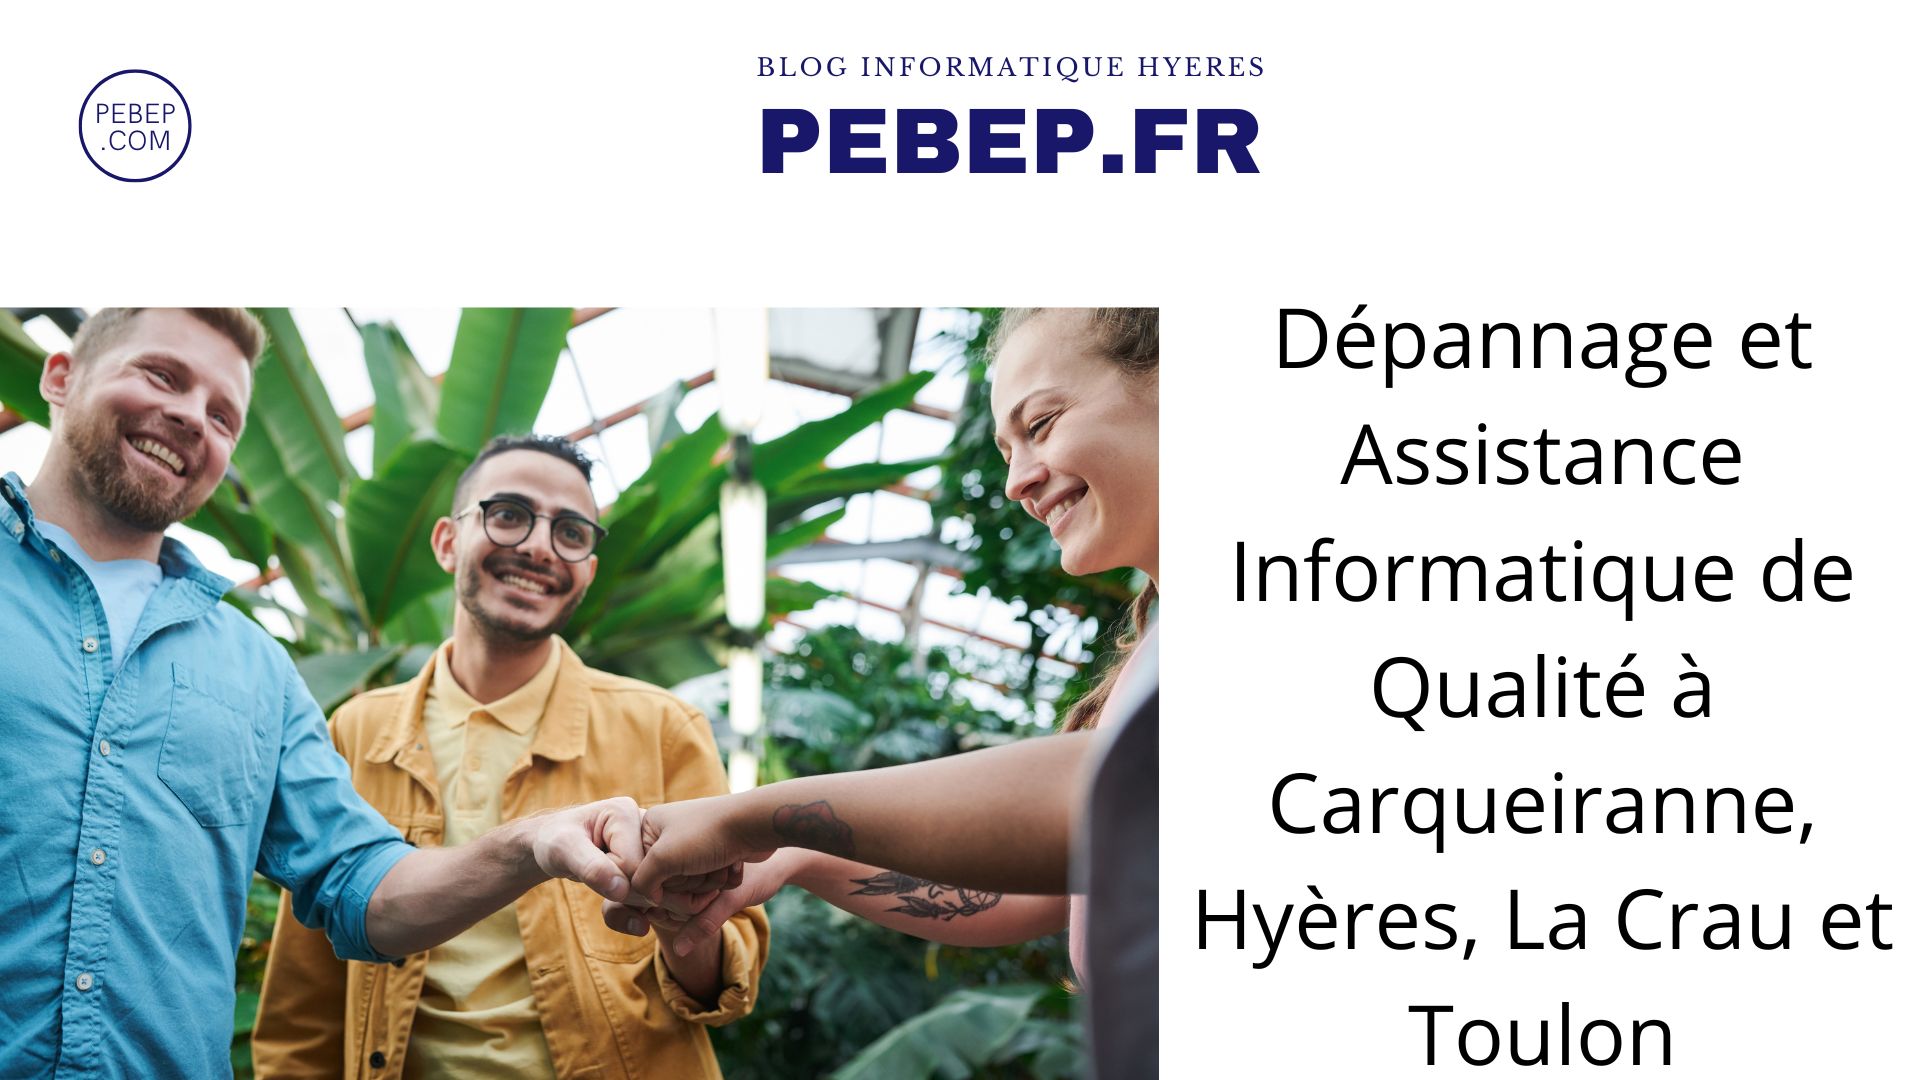 Dépannage et Assistance Informatique de Qualité à Carqueiranne, Hyères, La Crau et Toulon.jpg, mai 2023